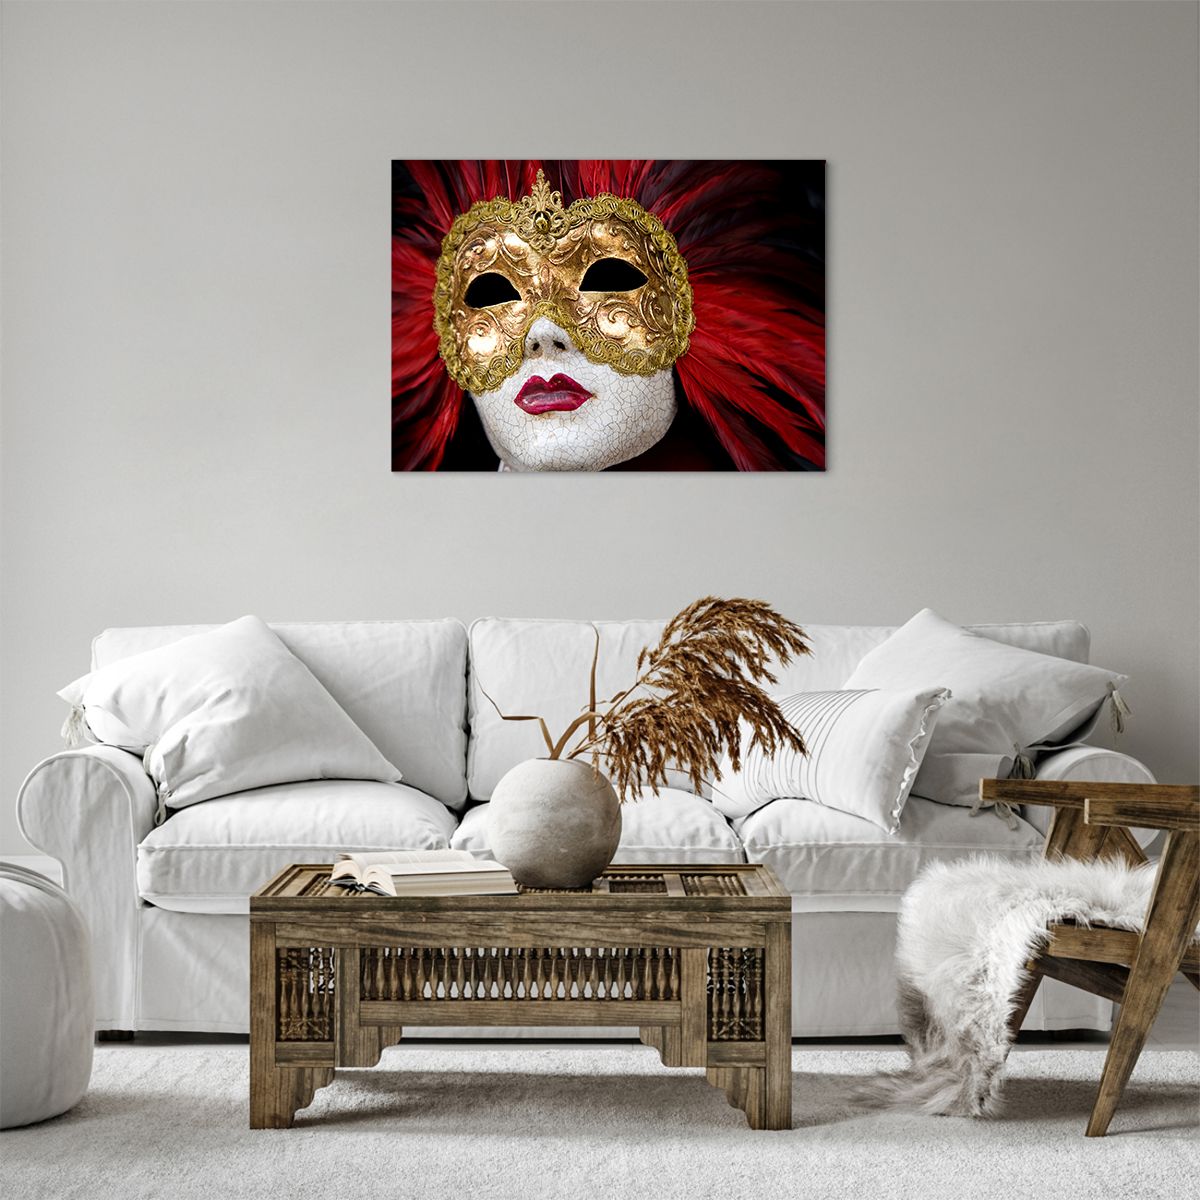 Bild auf Leinwand Venezianische Maske, Bild auf Leinwand Kunst, Bild auf Leinwand Venedig, Bild auf Leinwand Karneval, Bild auf Leinwand Italien